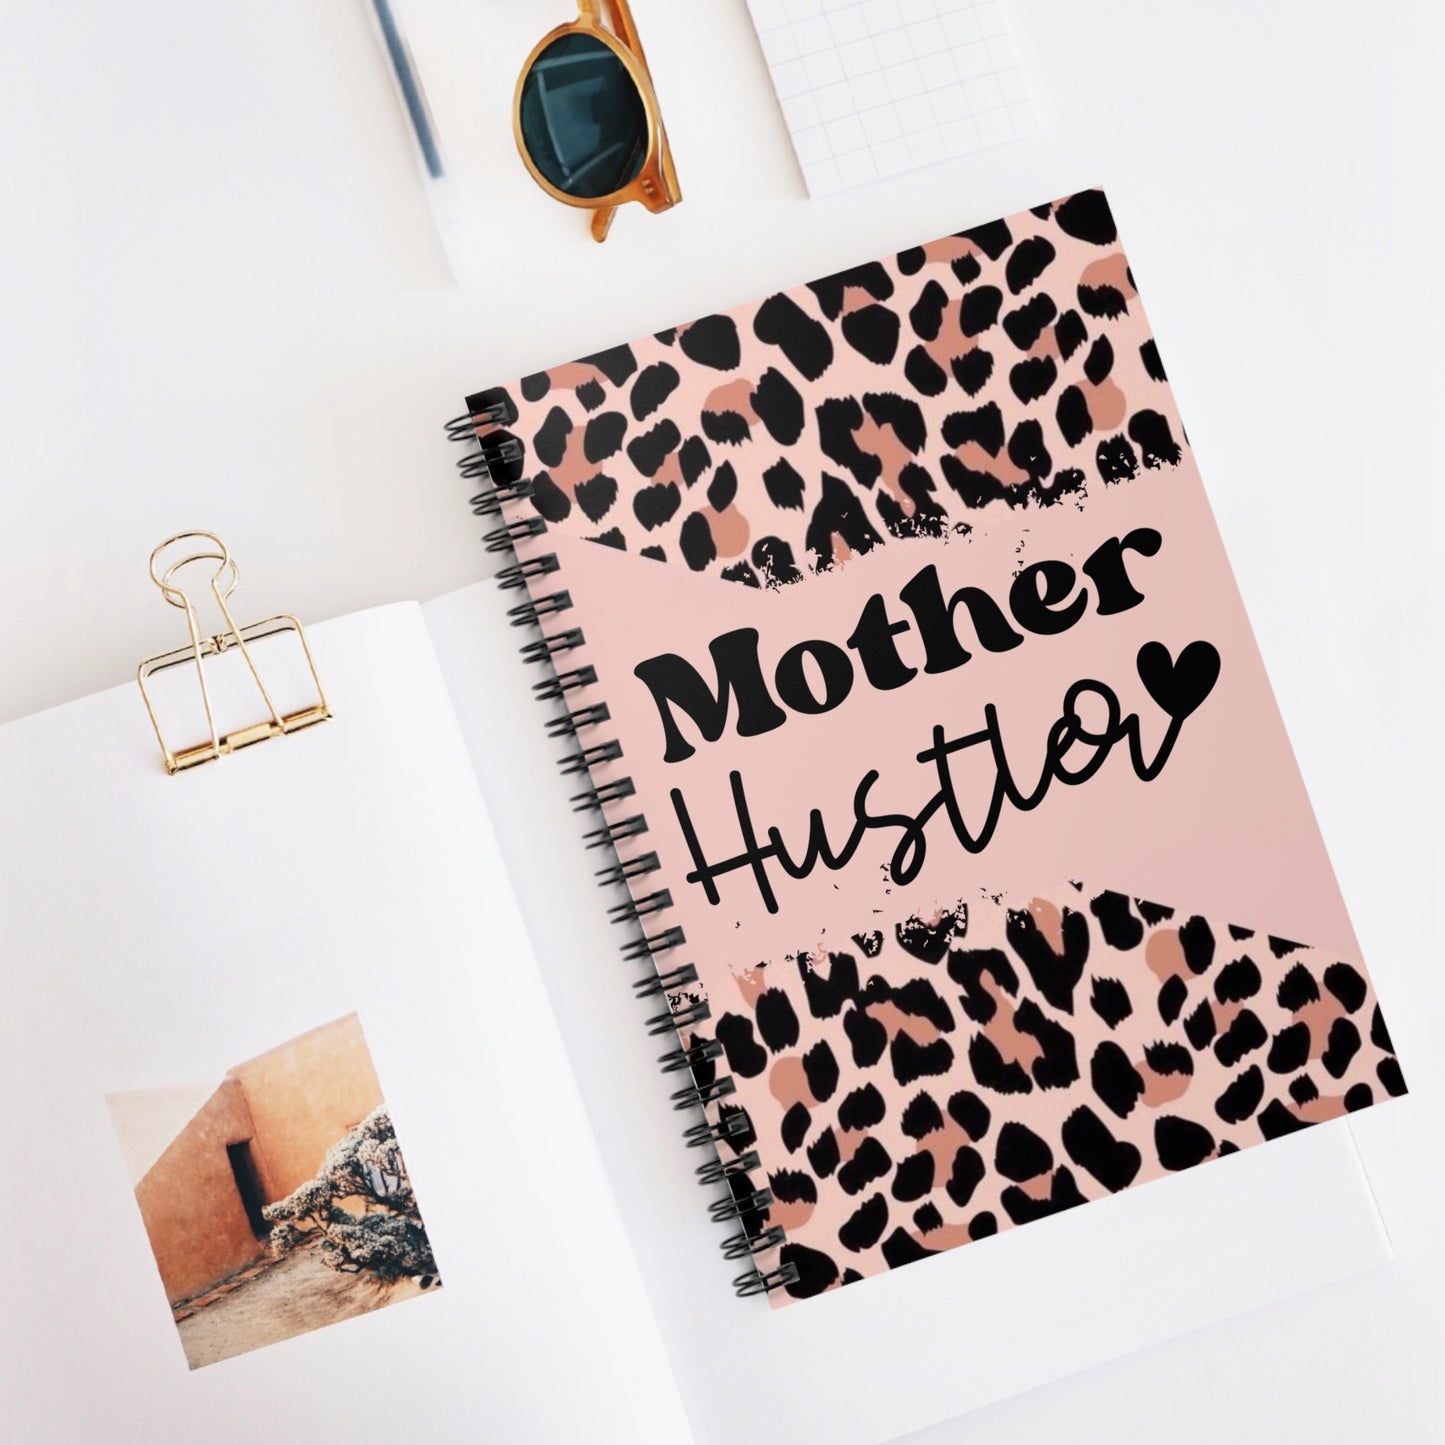 Mother Hustler Spiral Notebook - Ruled Line